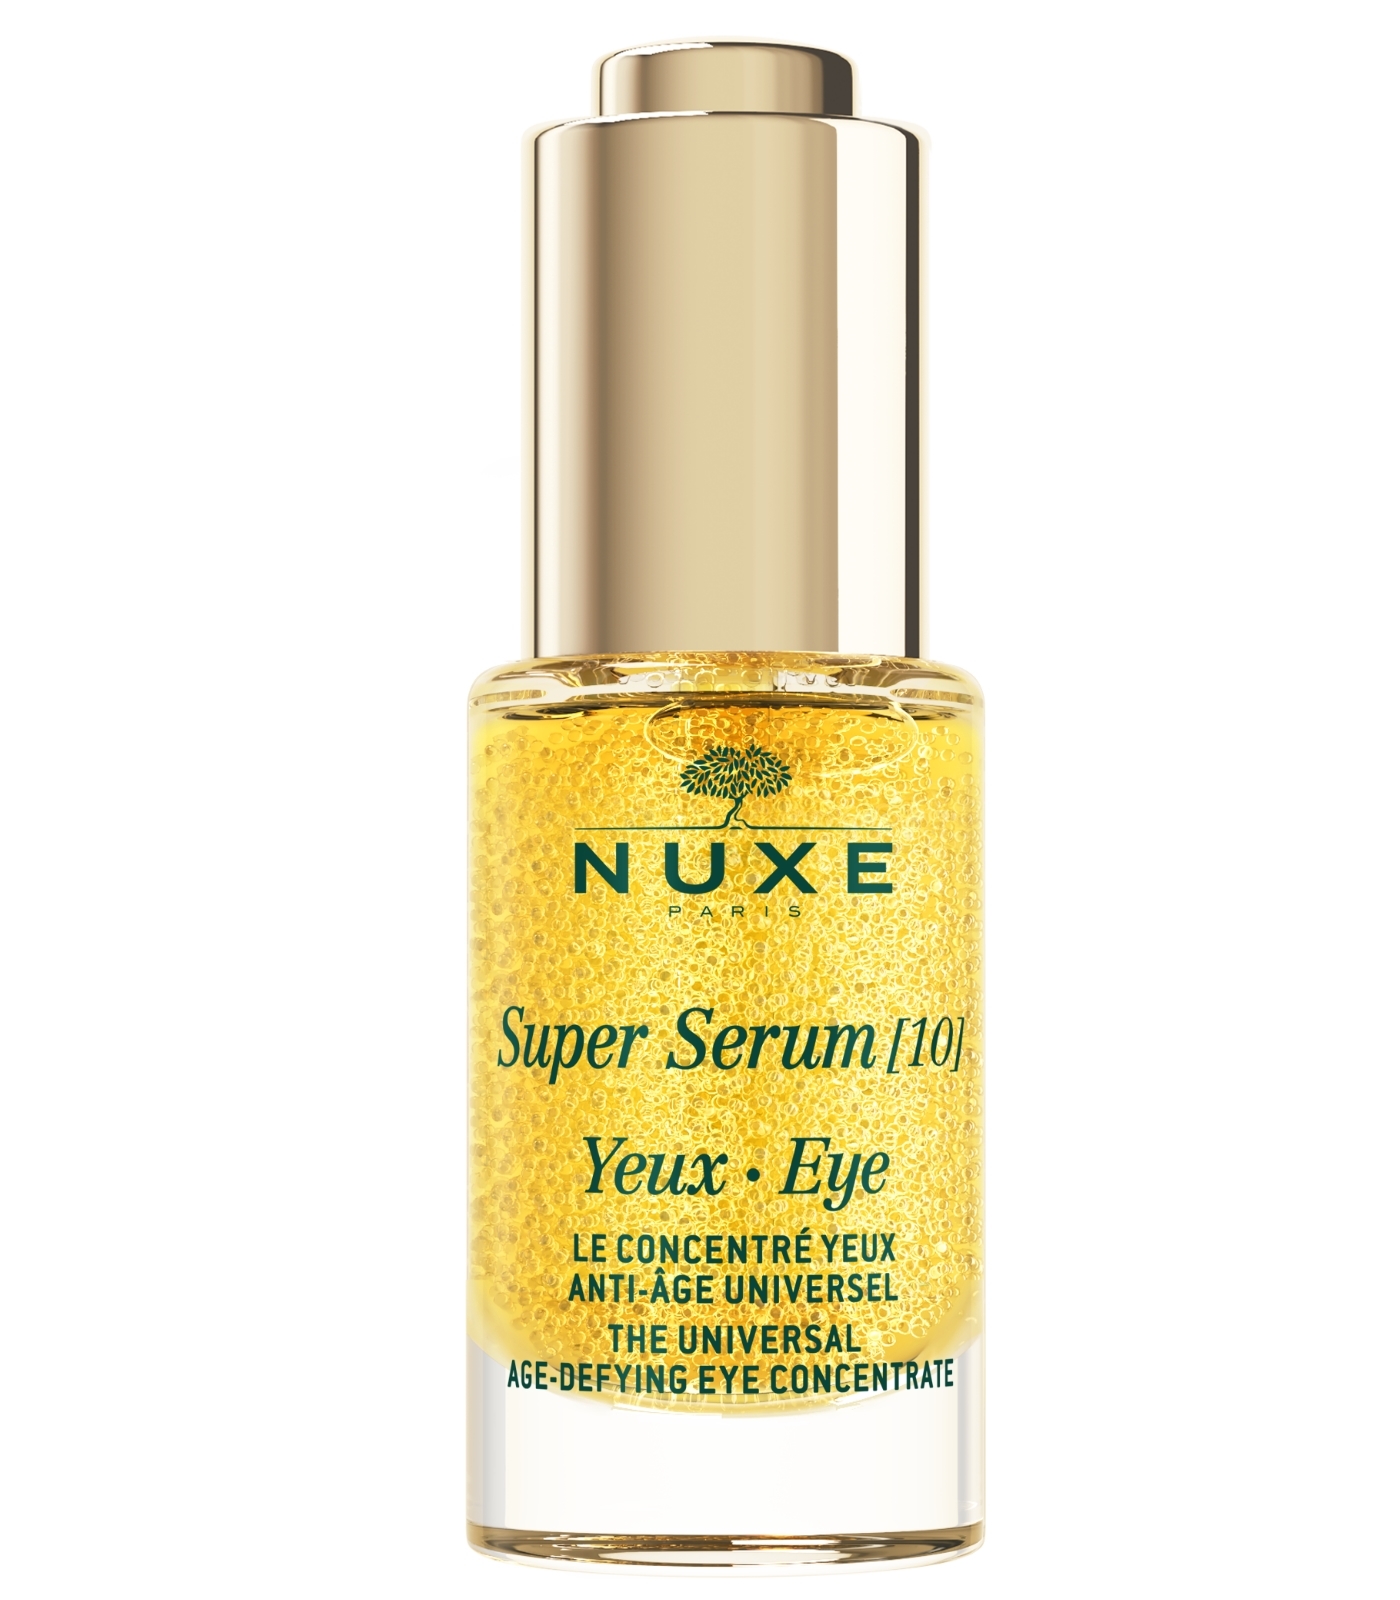 Super Serum [10] ojos de Nuxe.